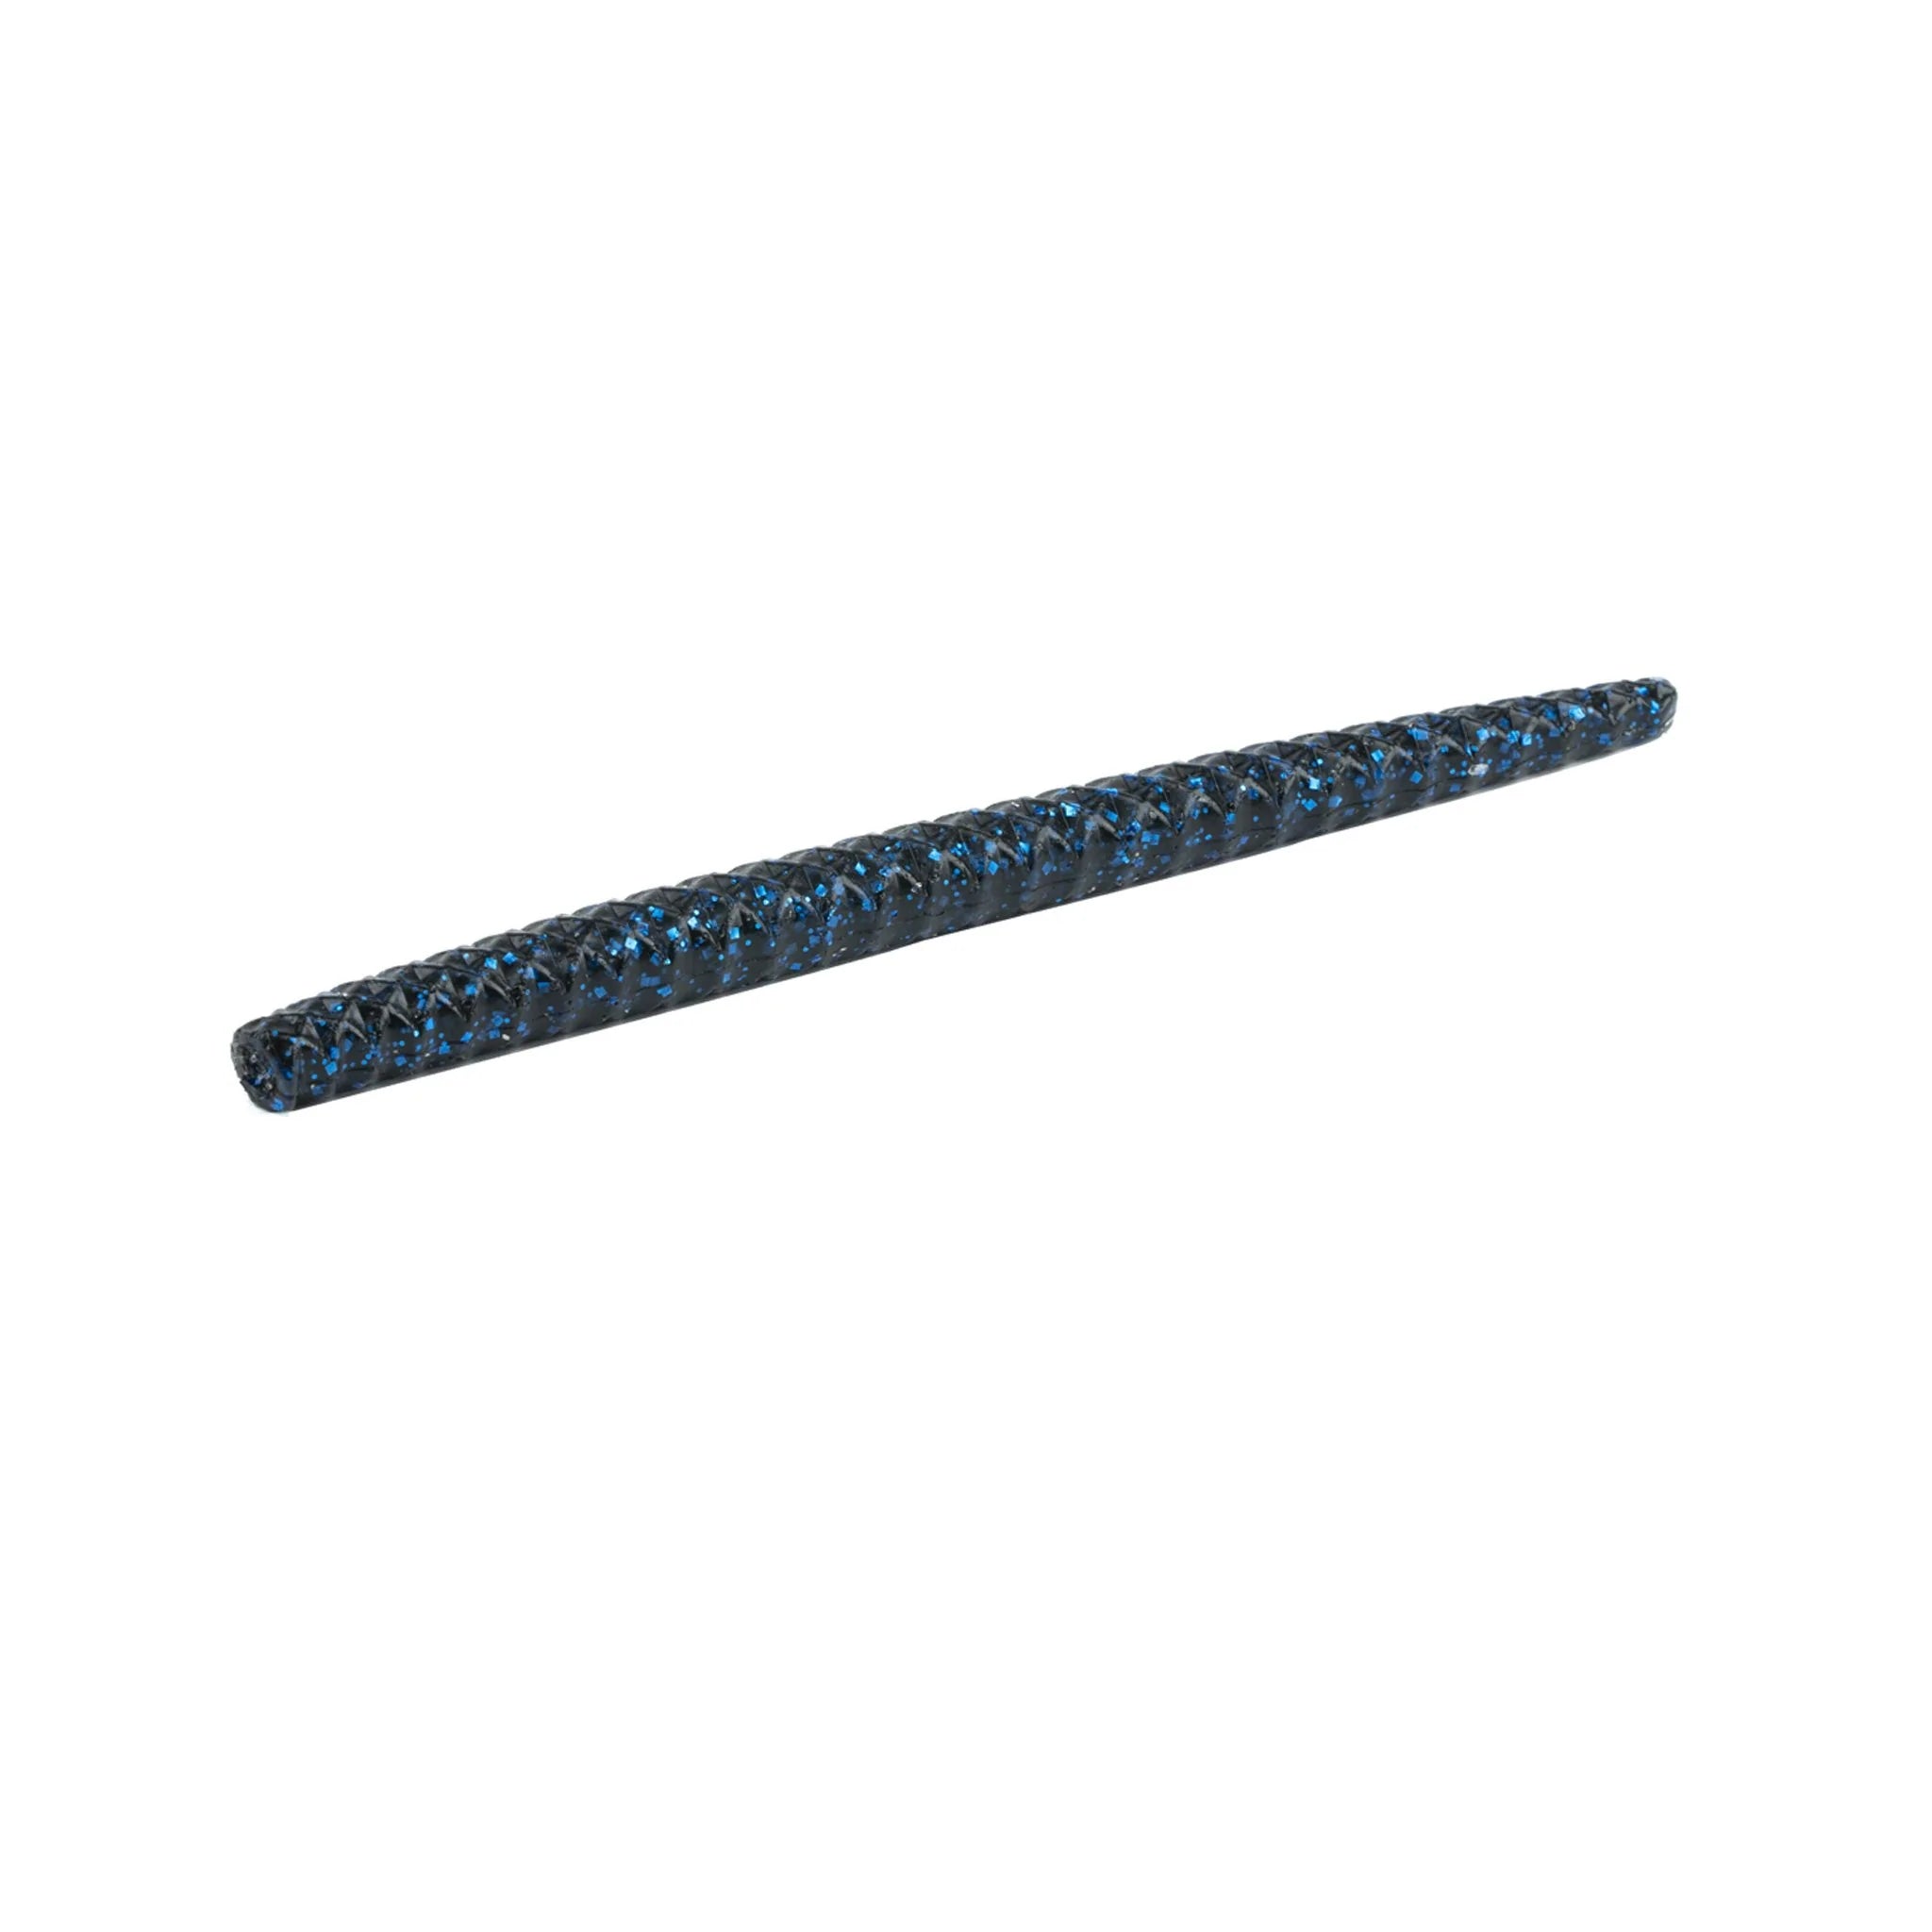 Buy black-n-blue-flake 6TH SENSE CLOUT 5.4 STICK BAIT